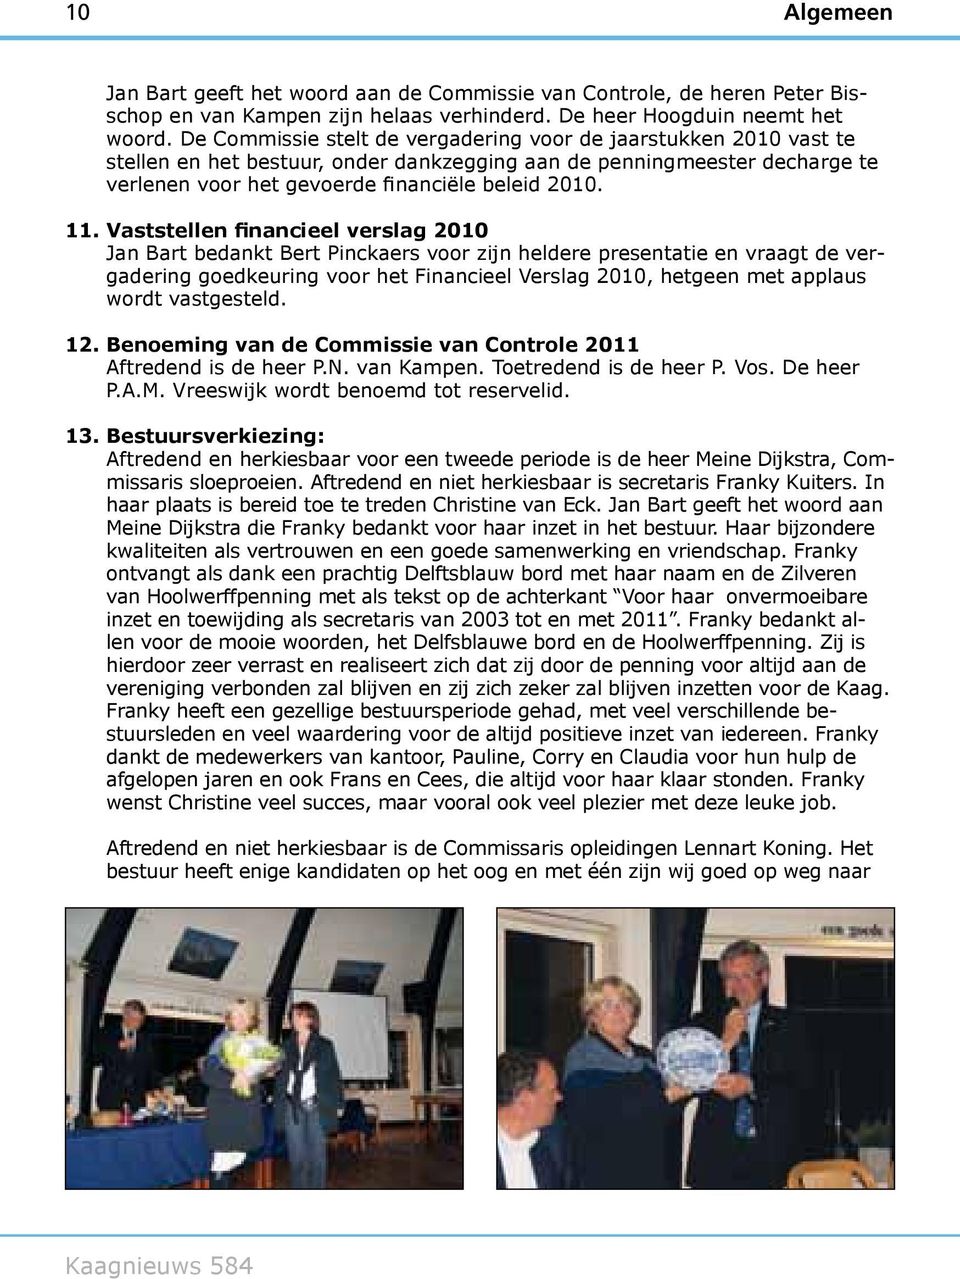 Vaststellen financieel verslag 2010 Jan Bart bedankt Bert Pinckaers voor zijn heldere presentatie en vraagt de vergadering goedkeuring voor het Financieel Verslag 2010, hetgeen met applaus wordt